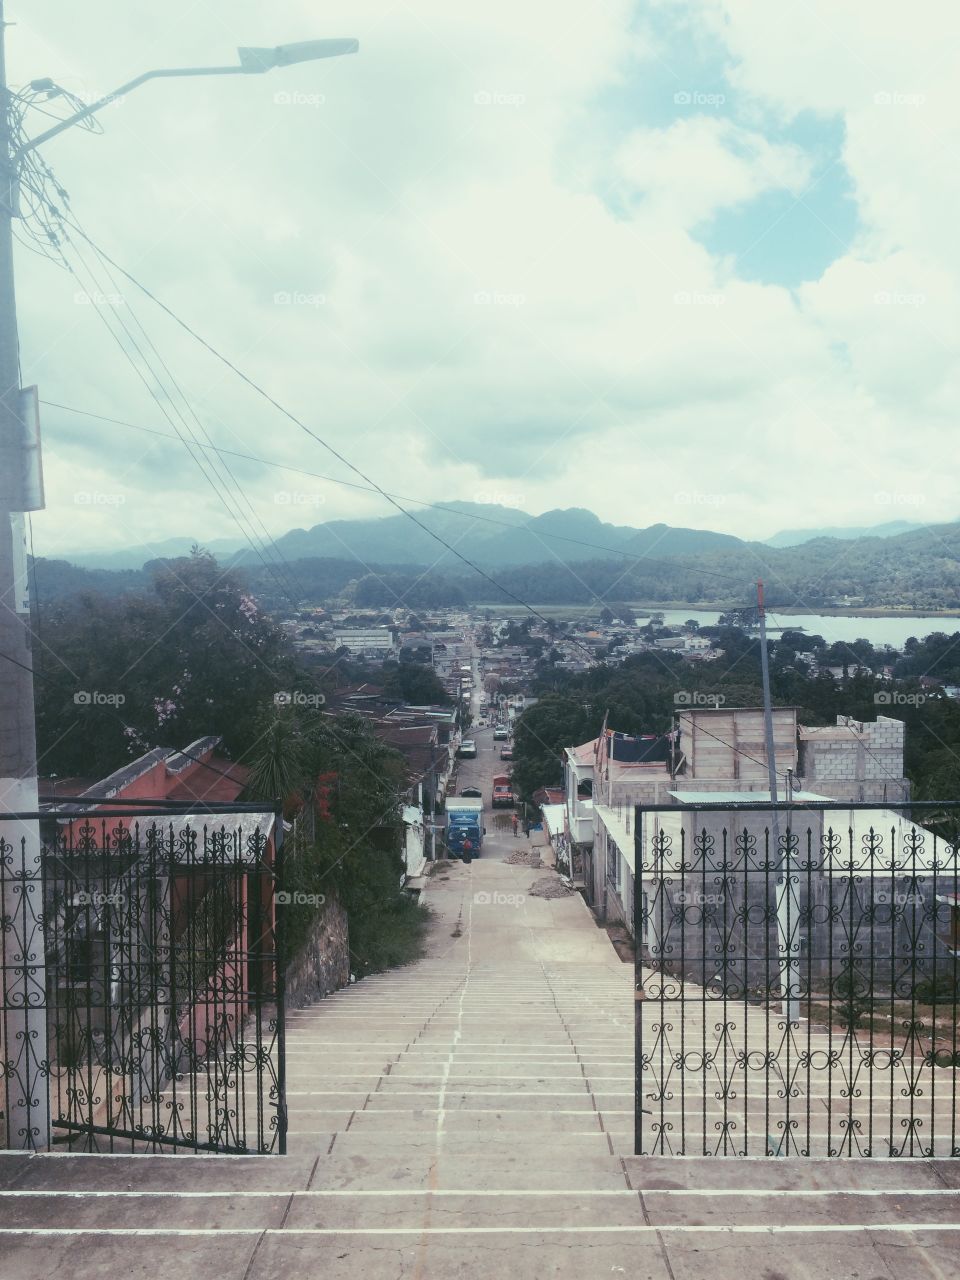 Guatemala: the forgotten path